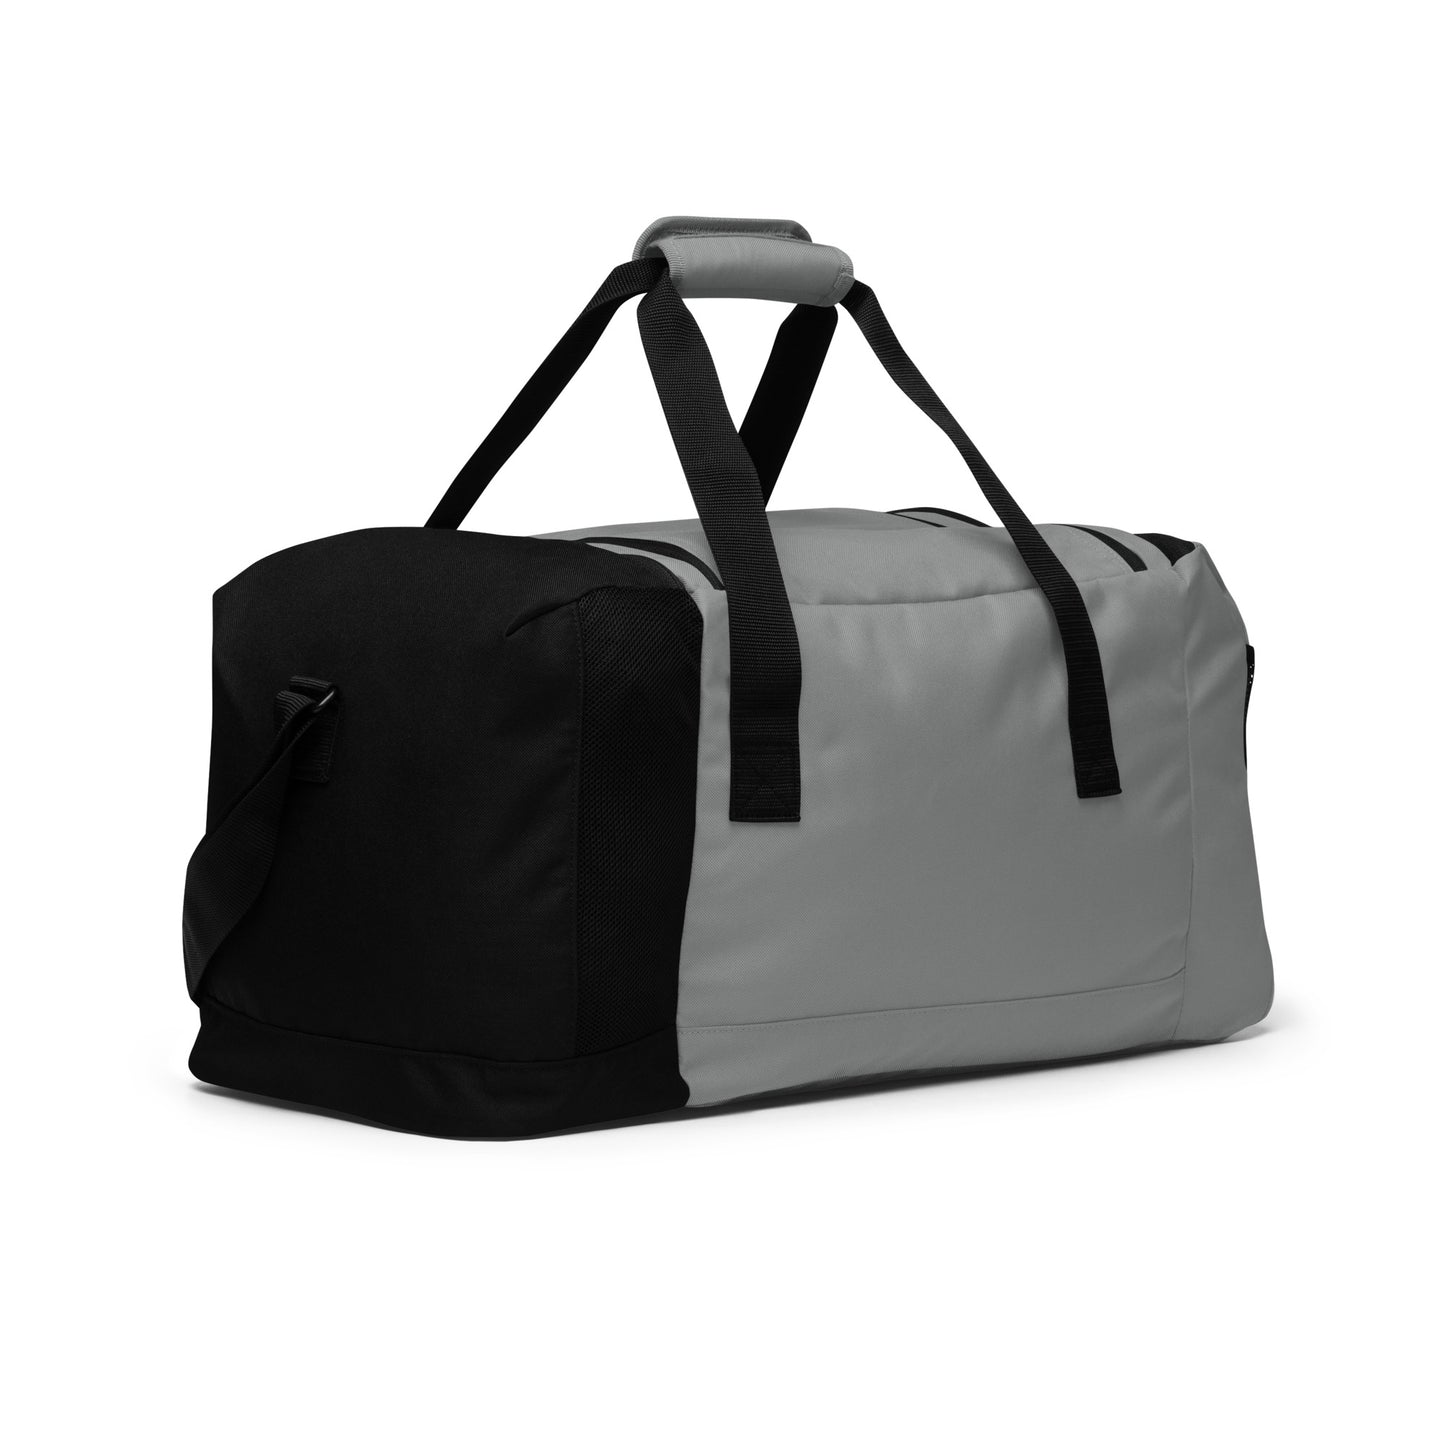 Aett - Adidas Duffle Bag